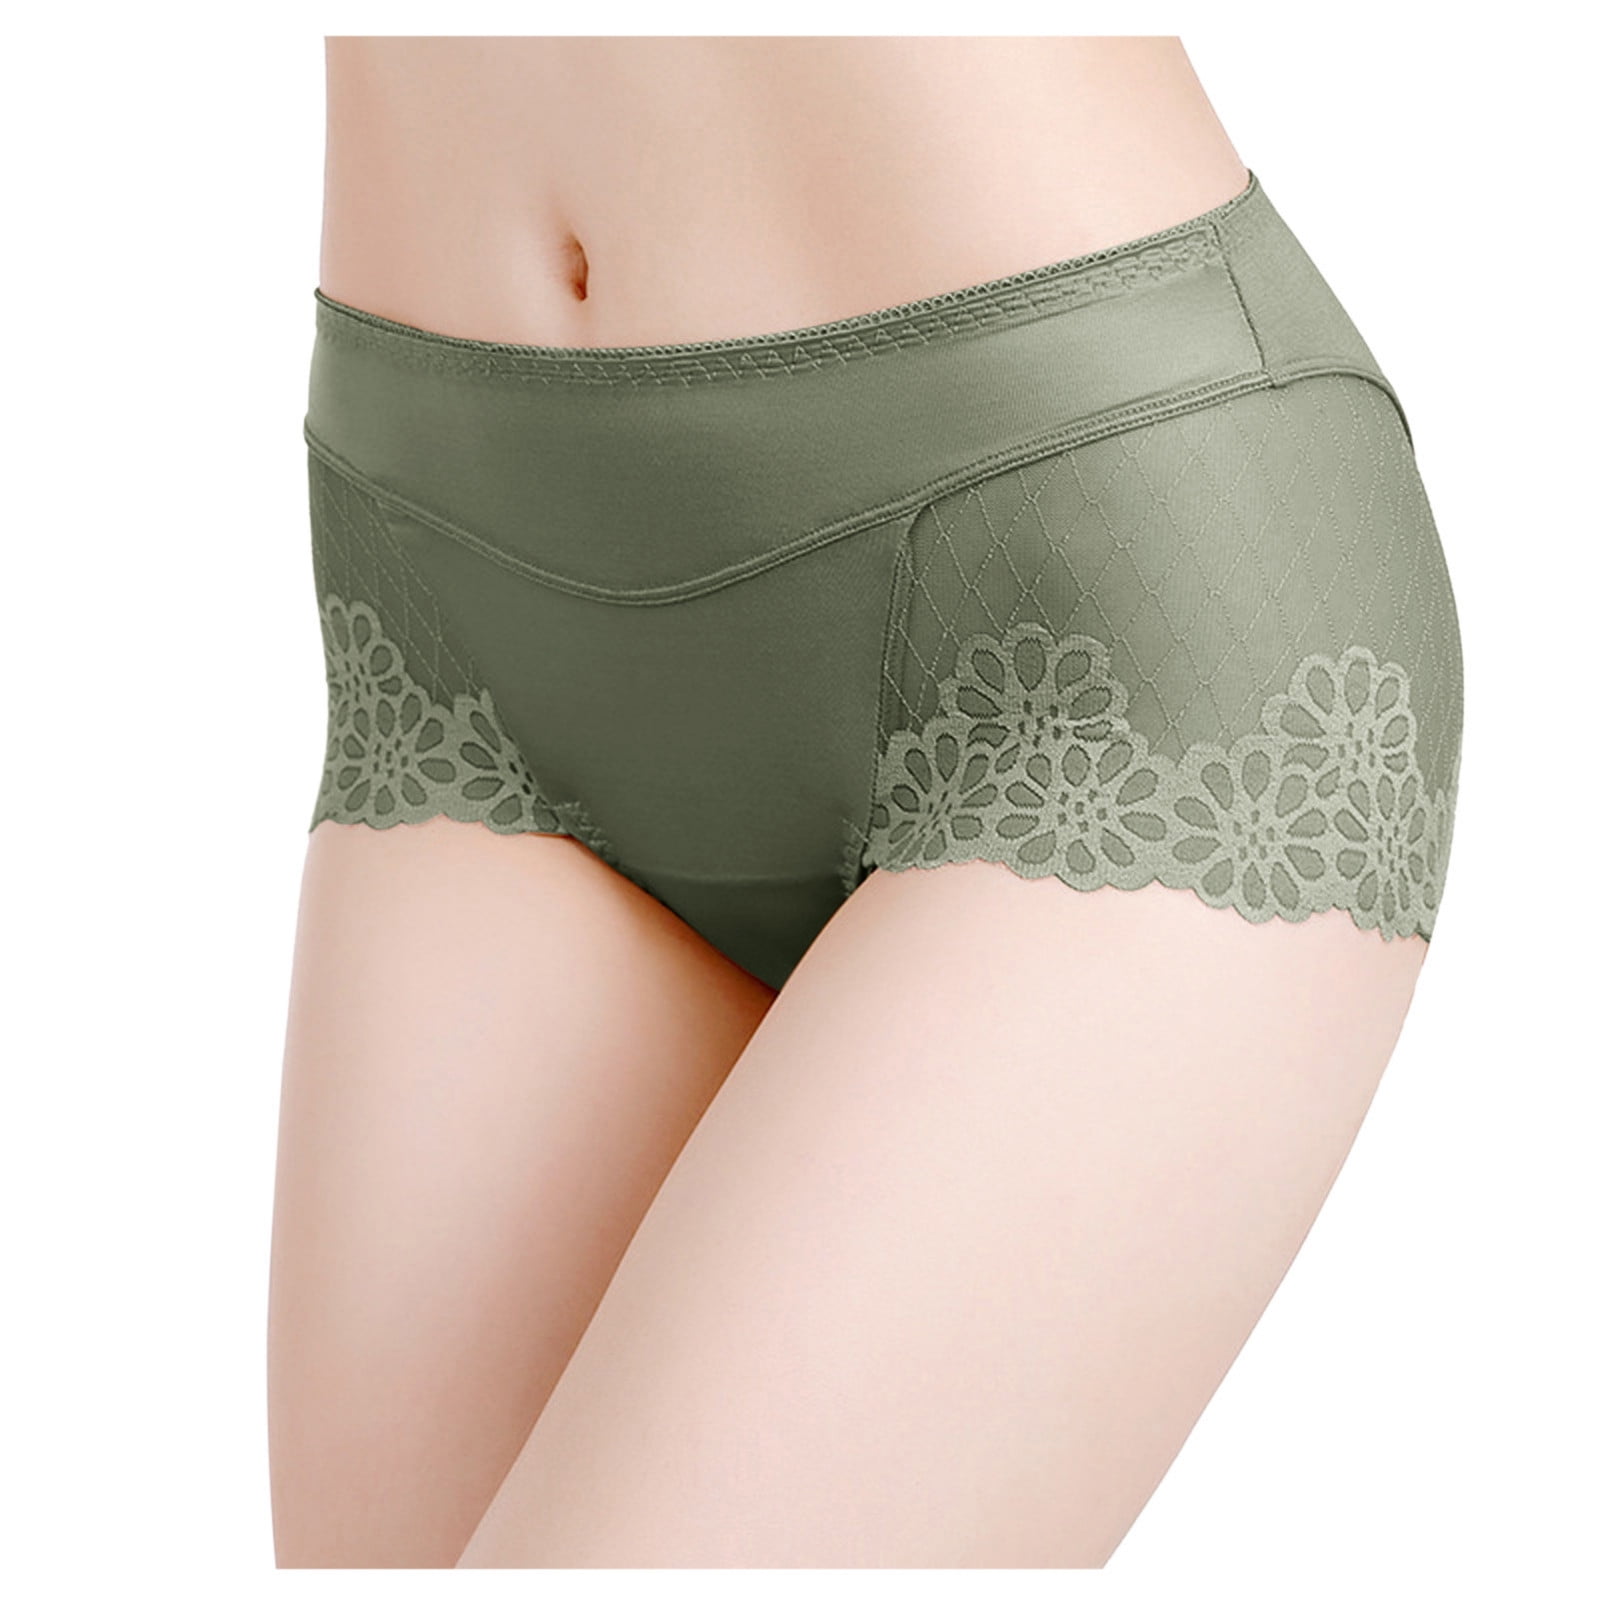 Mrat Seamless Panties Cotton Stretch Briefs Soft Ladies